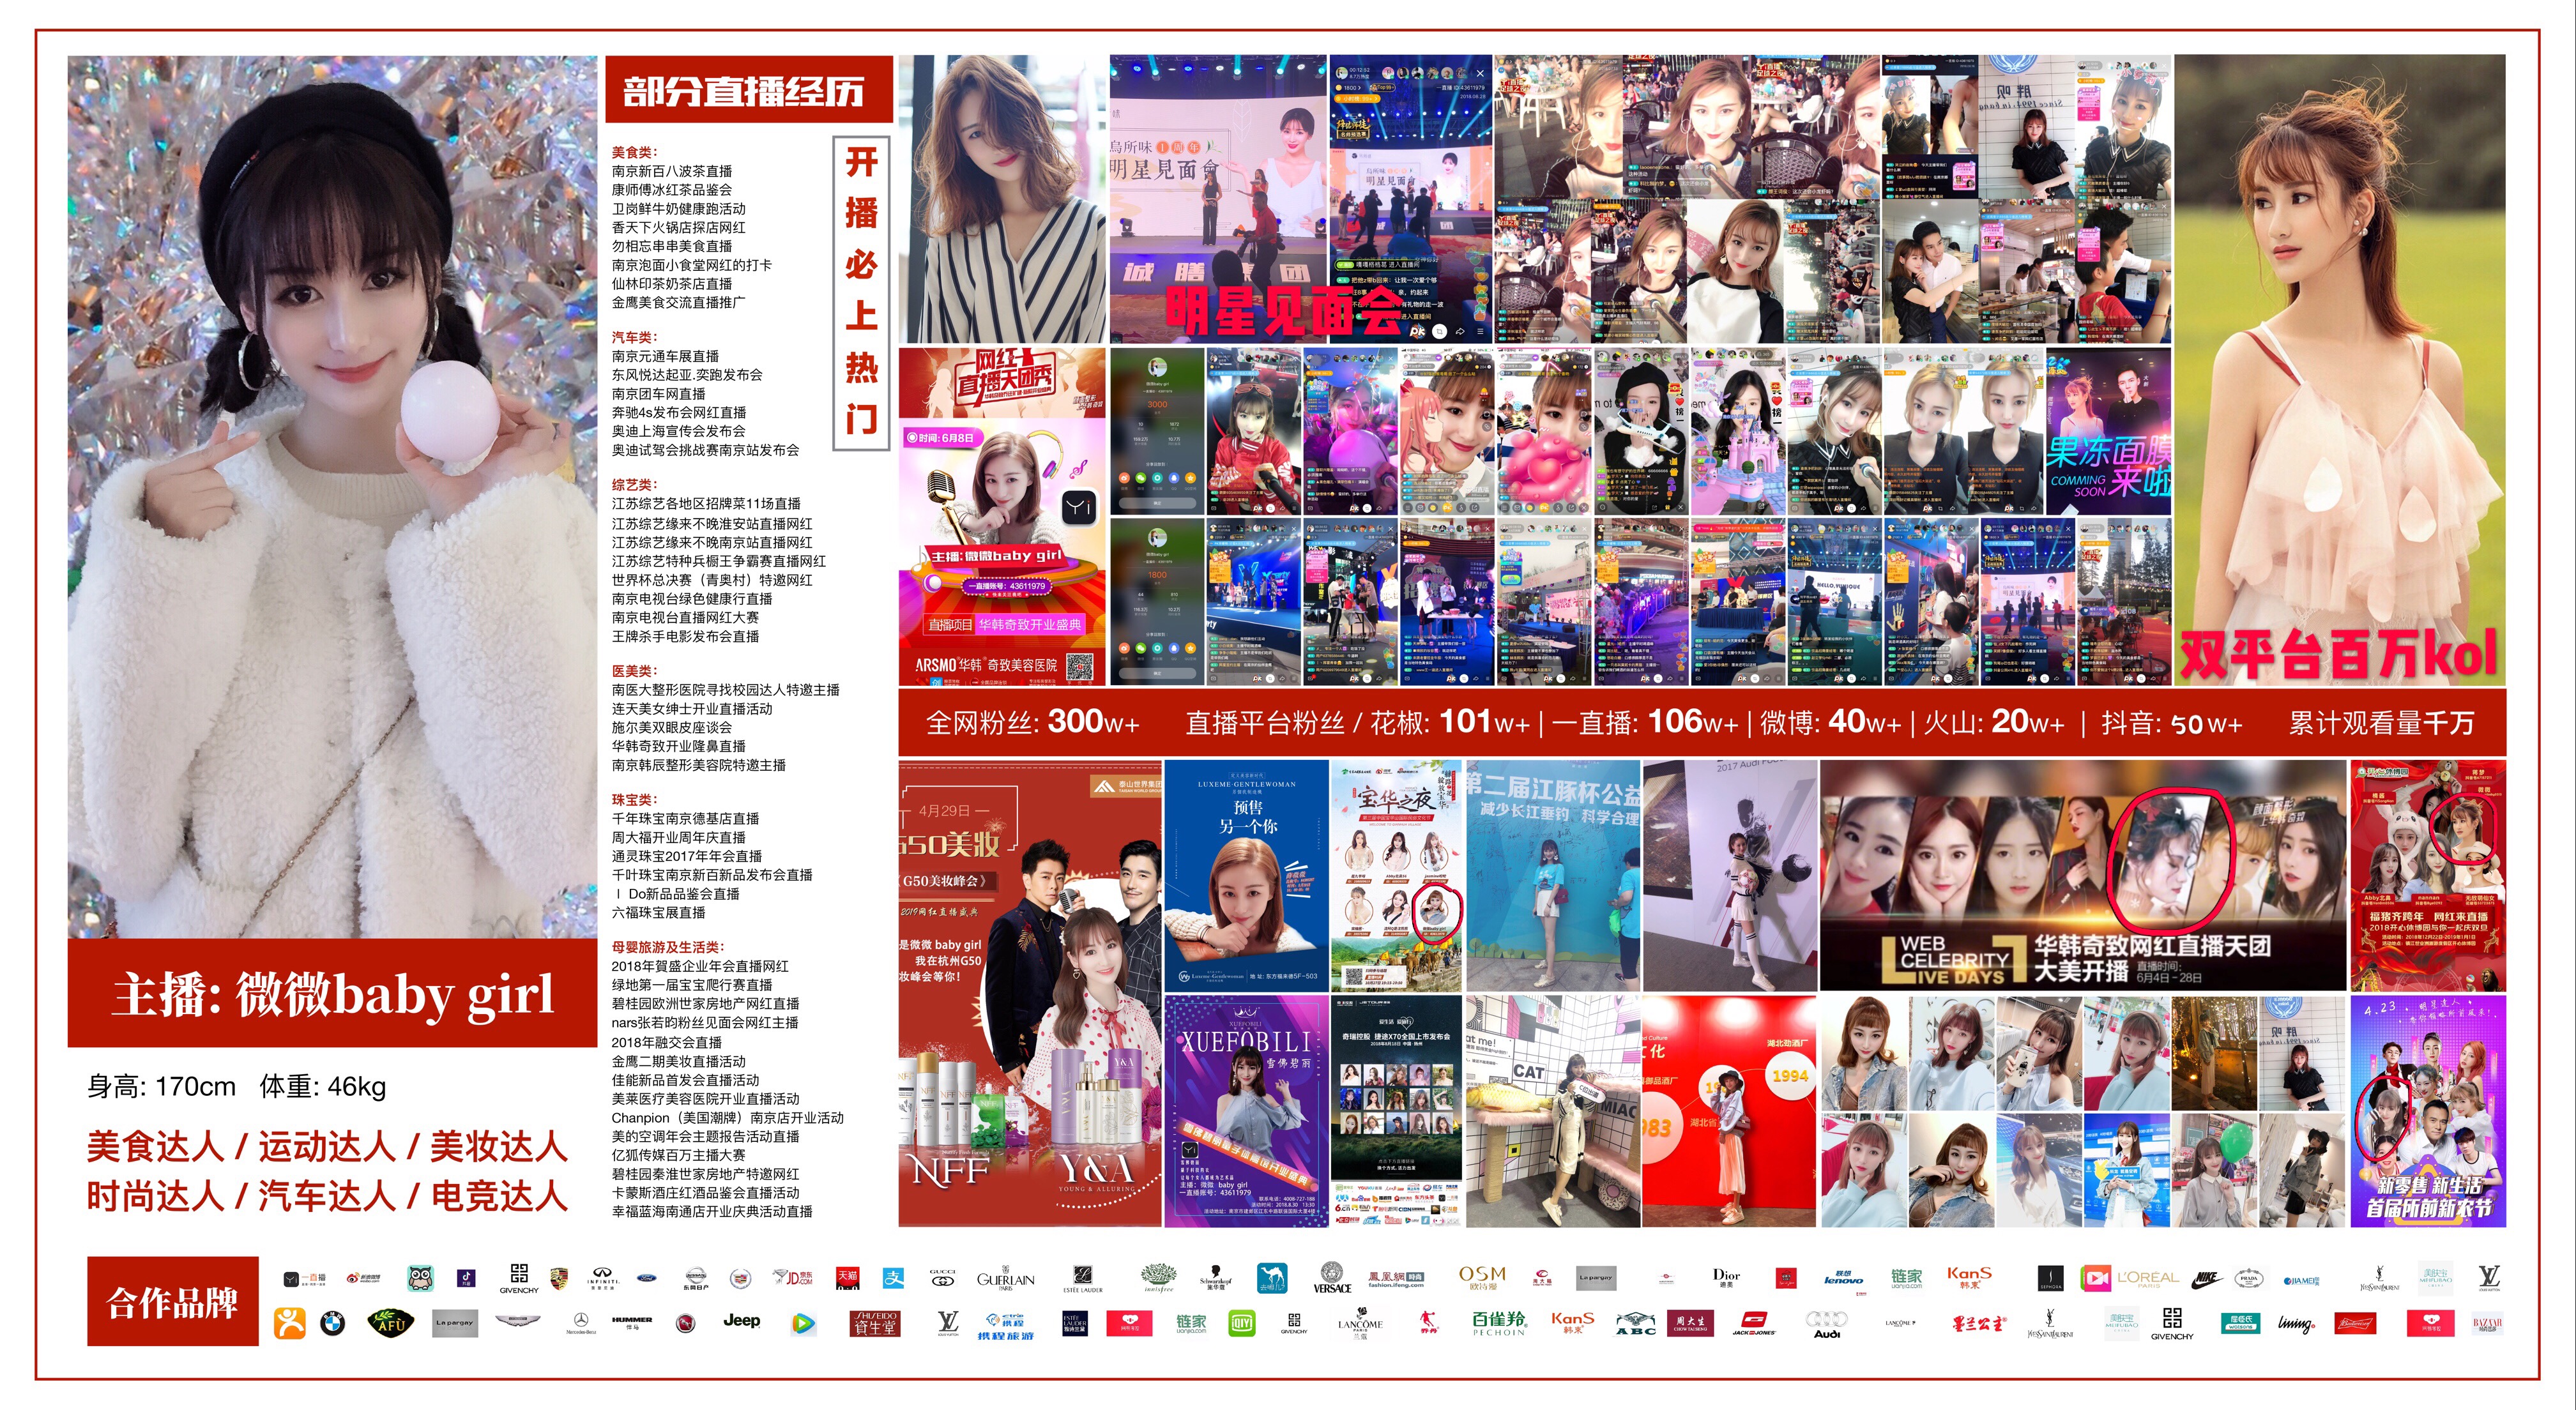 杭州市5G网络新媒体直播电商产品拍摄厂家5G网络新媒体直播电商产品拍摄 品牌广告宣传 企业形象拍摄 影视广告拍摄